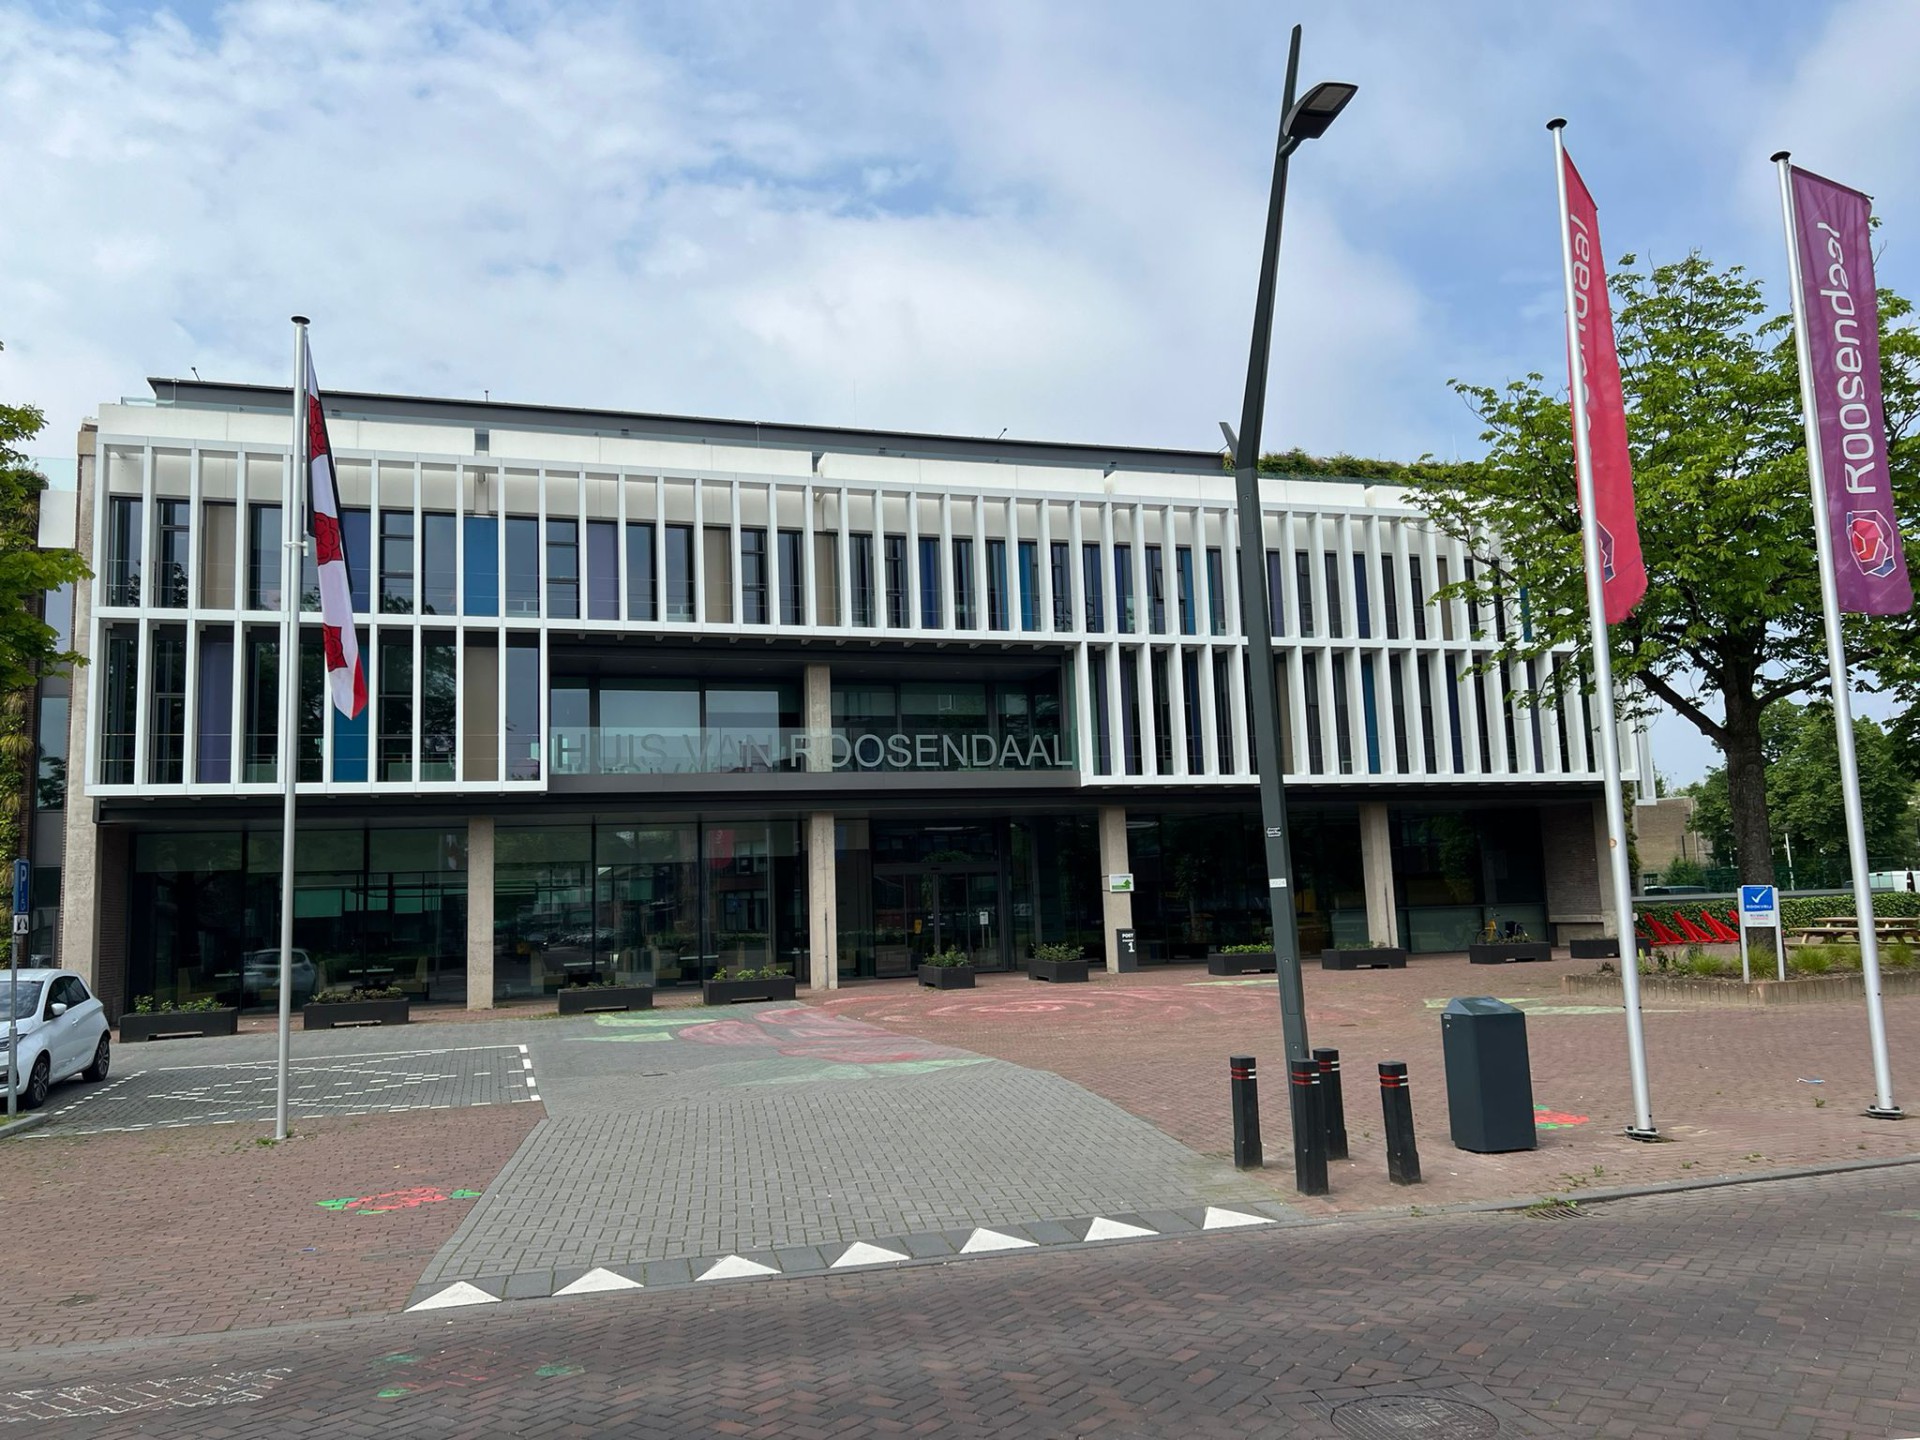 Etten-Leur / Roosendaal